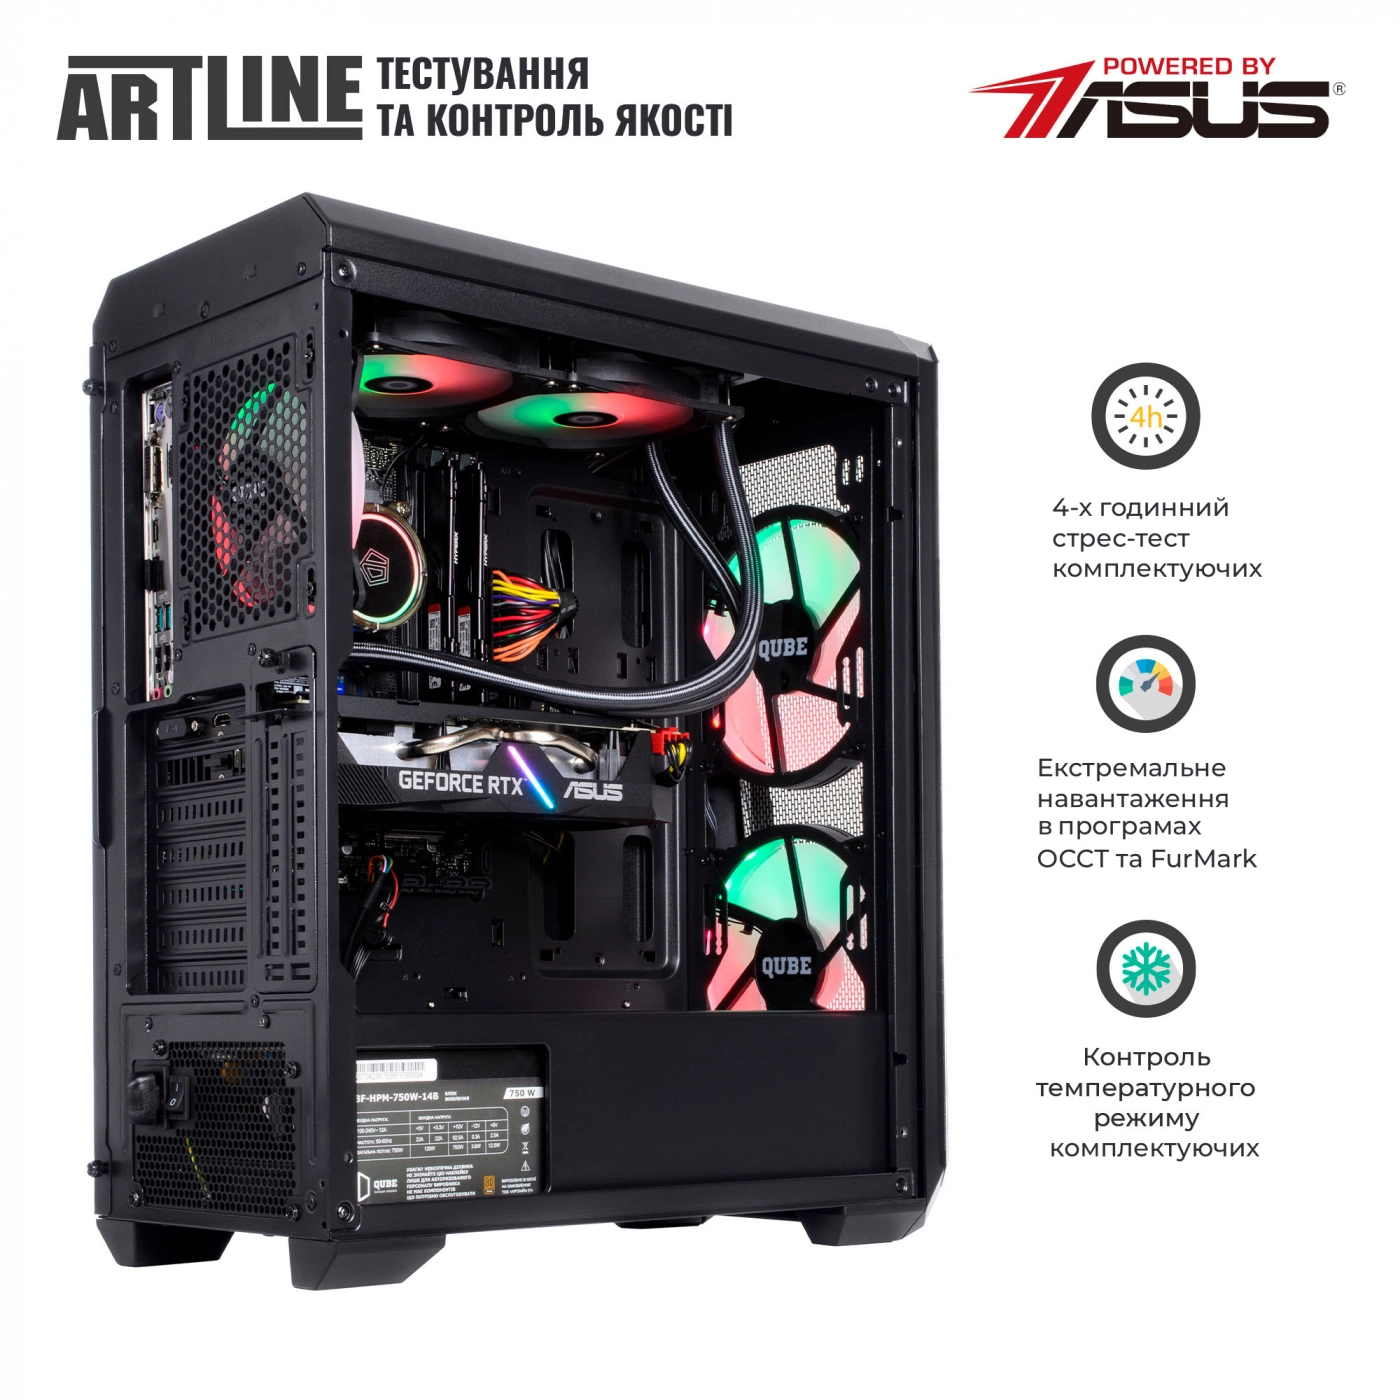 Купить Компьютер ARTLINE Gaming X79v45 - фото 9